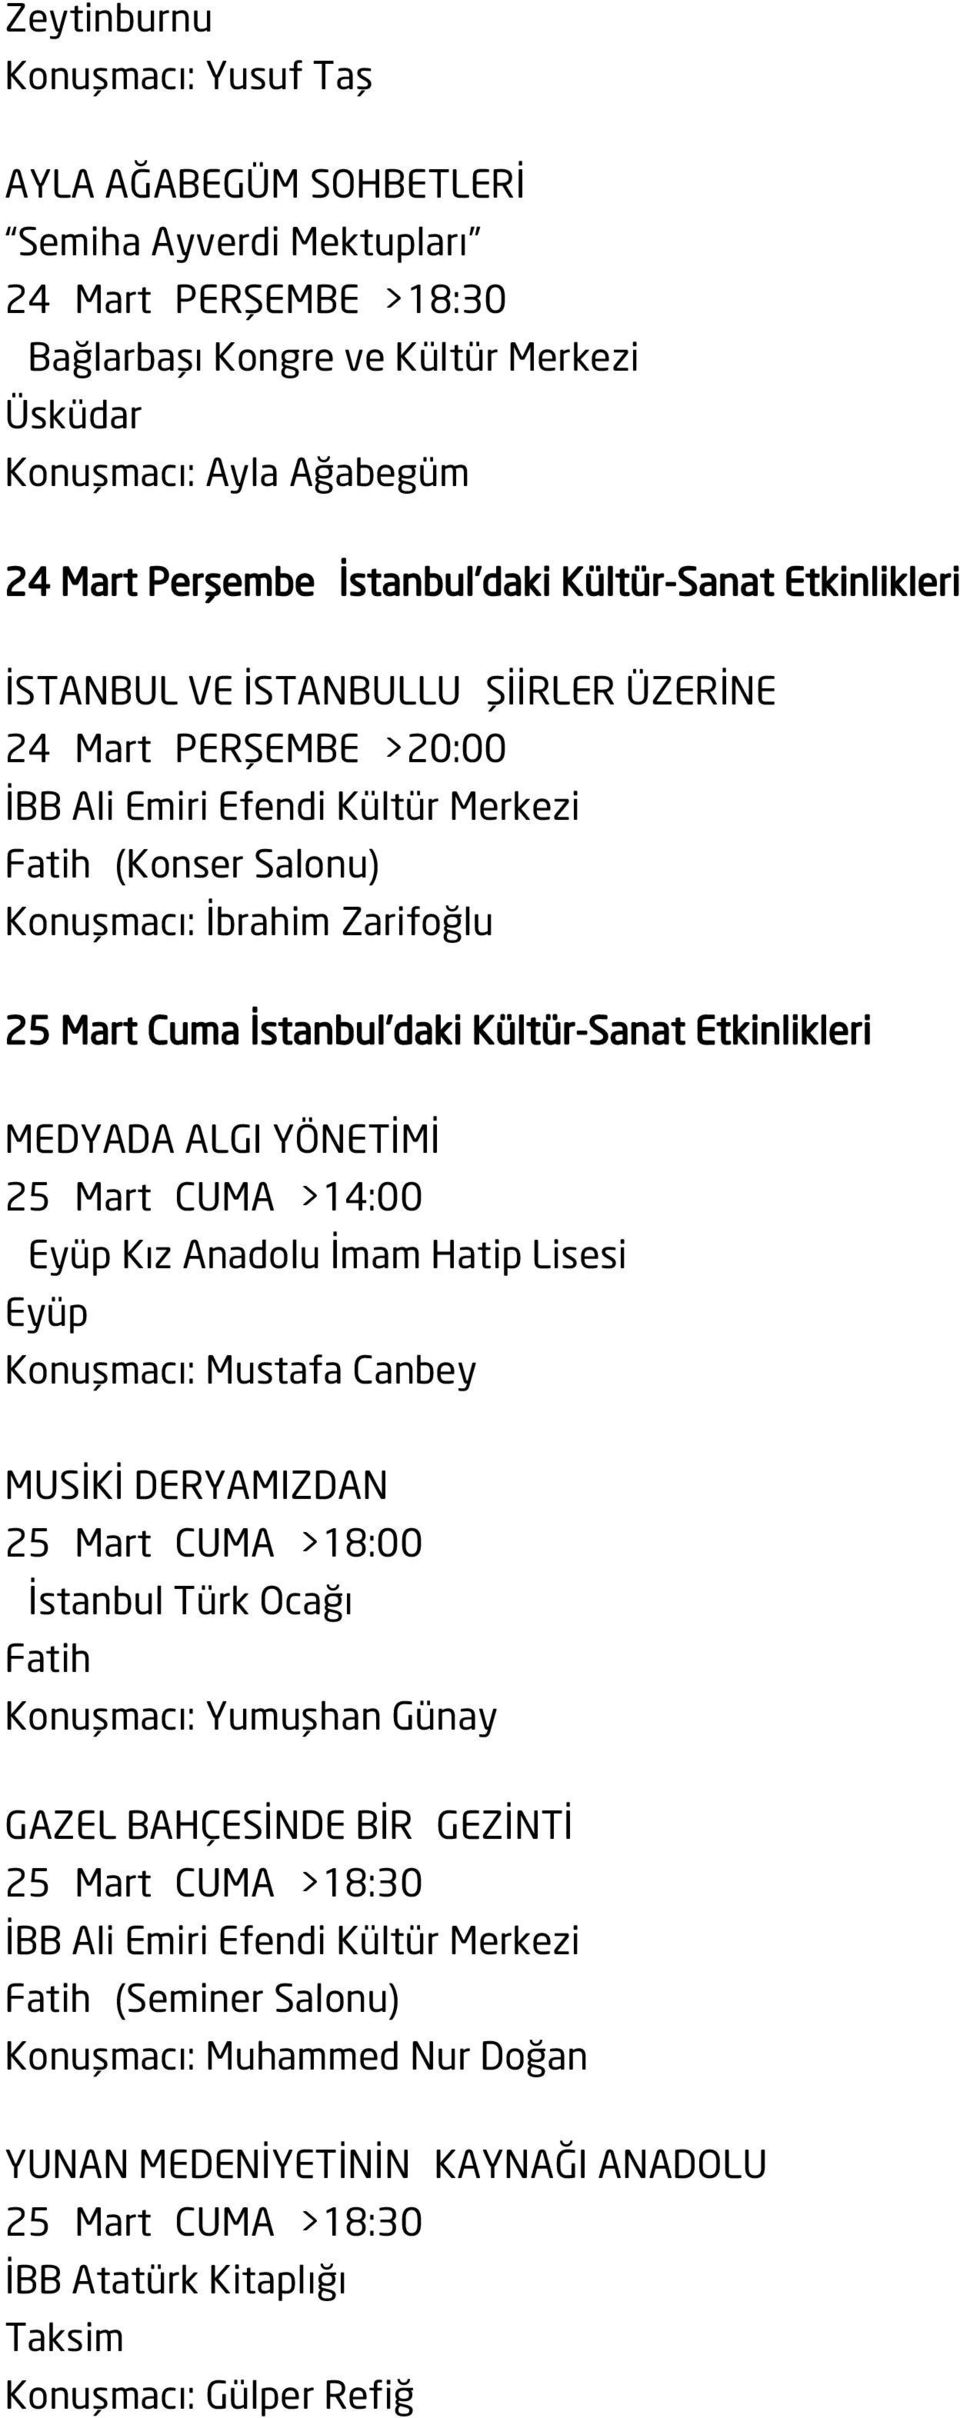 Etkinlikleri MEDYADA ALGI YÖNETİMİ 25 Mart CUMA >14:00 Eyüp Kız Anadolu İmam Hatip Lisesi Eyüp Konuşmacı: Mustafa Canbey MUSİKİ DERYAMIZDAN 25 Mart CUMA >18:00 İstanbul Türk Ocağı Konuşmacı: